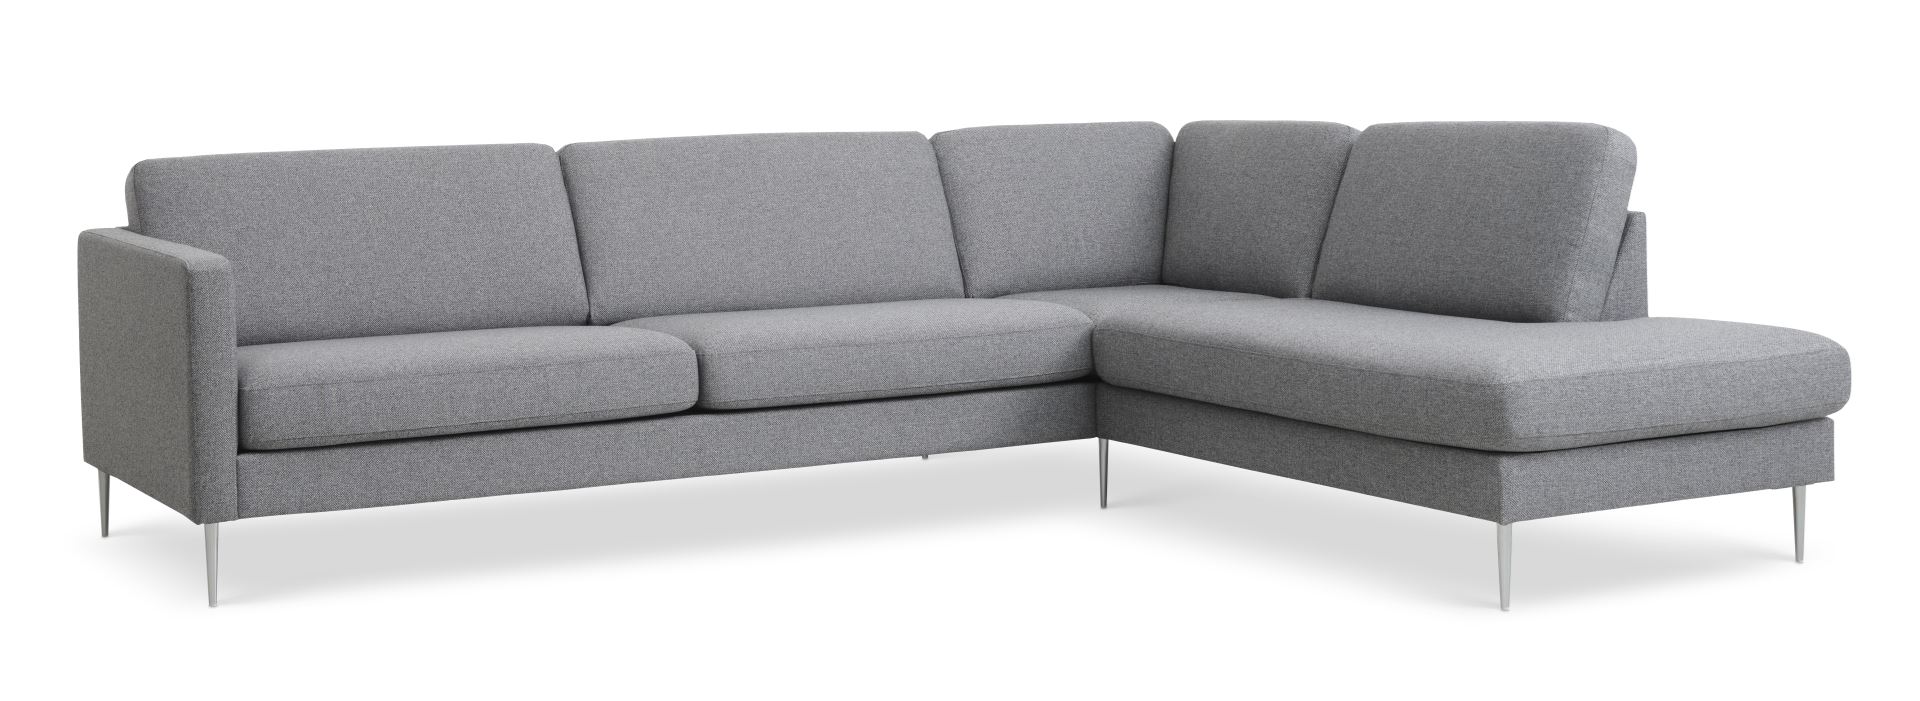 Ask sæt 61 stor OE sofa, m. højre chaiselong - lys granitgrå polyester stof og børstet aluminium